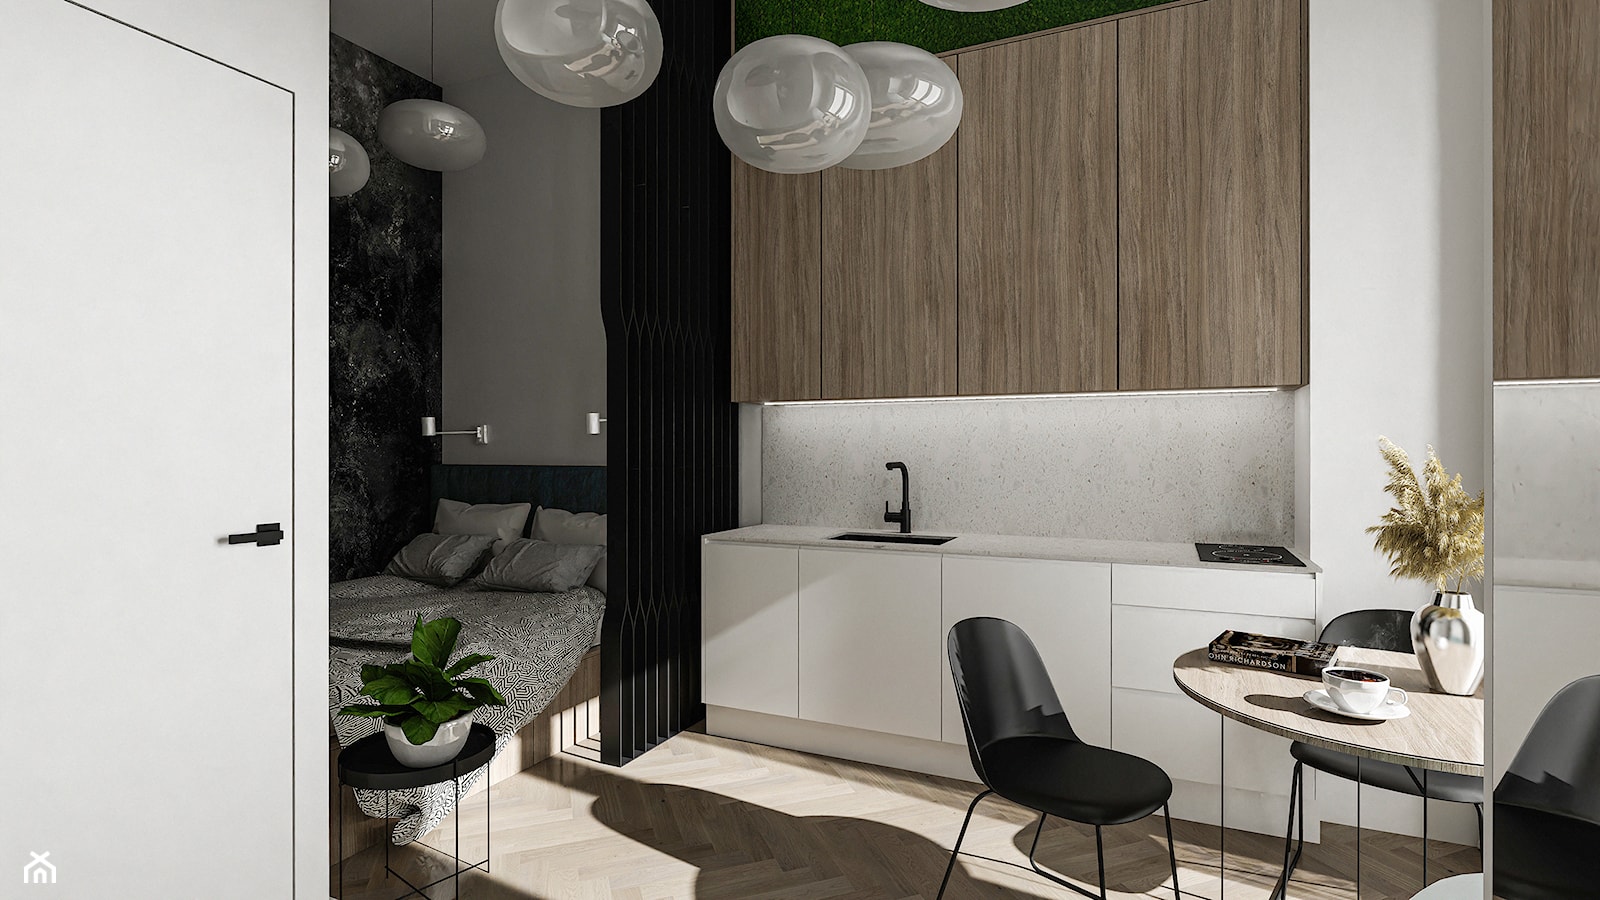 Lokal mieszkalny typu studio. - Salon, styl nowoczesny - zdjęcie od pdobrowolski.design - Homebook